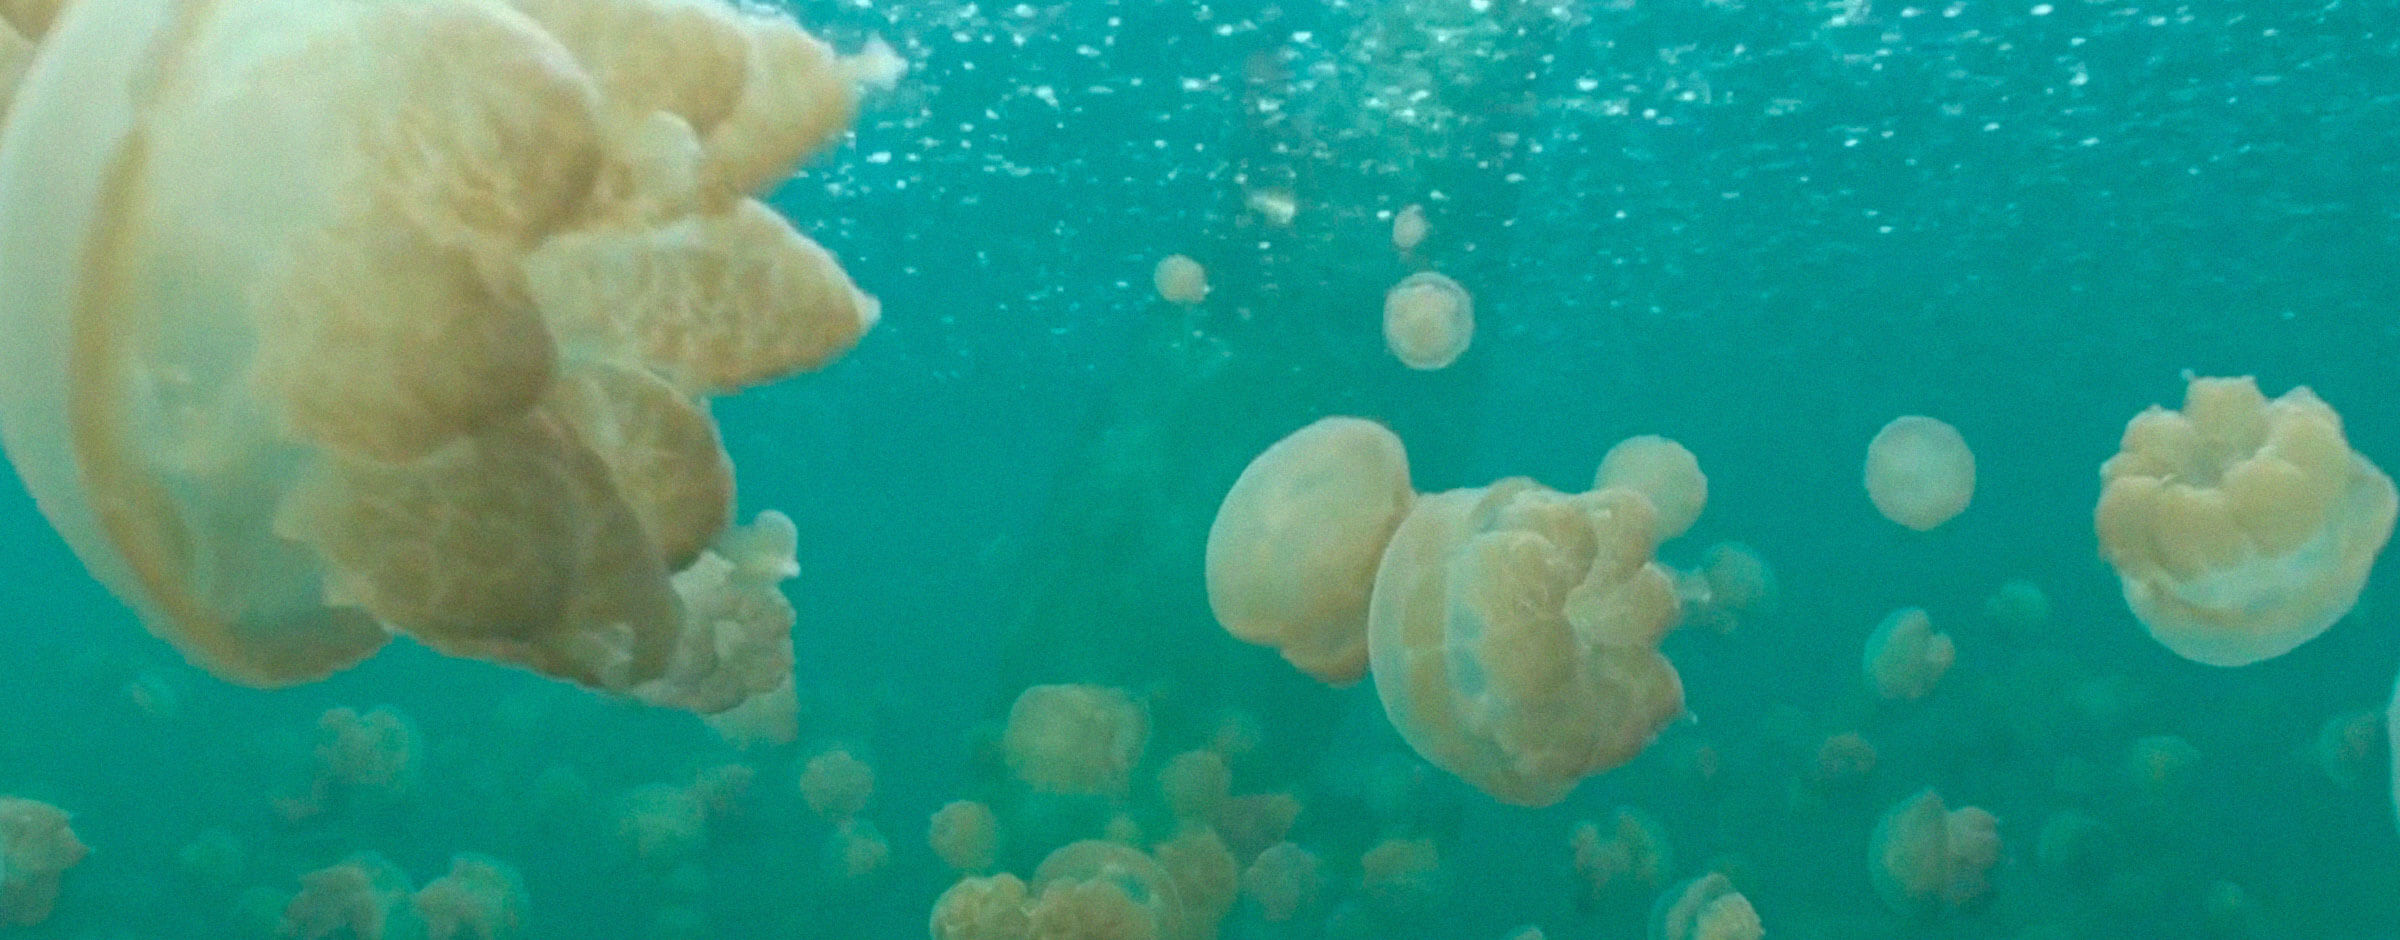 Medusas flotando en el mar